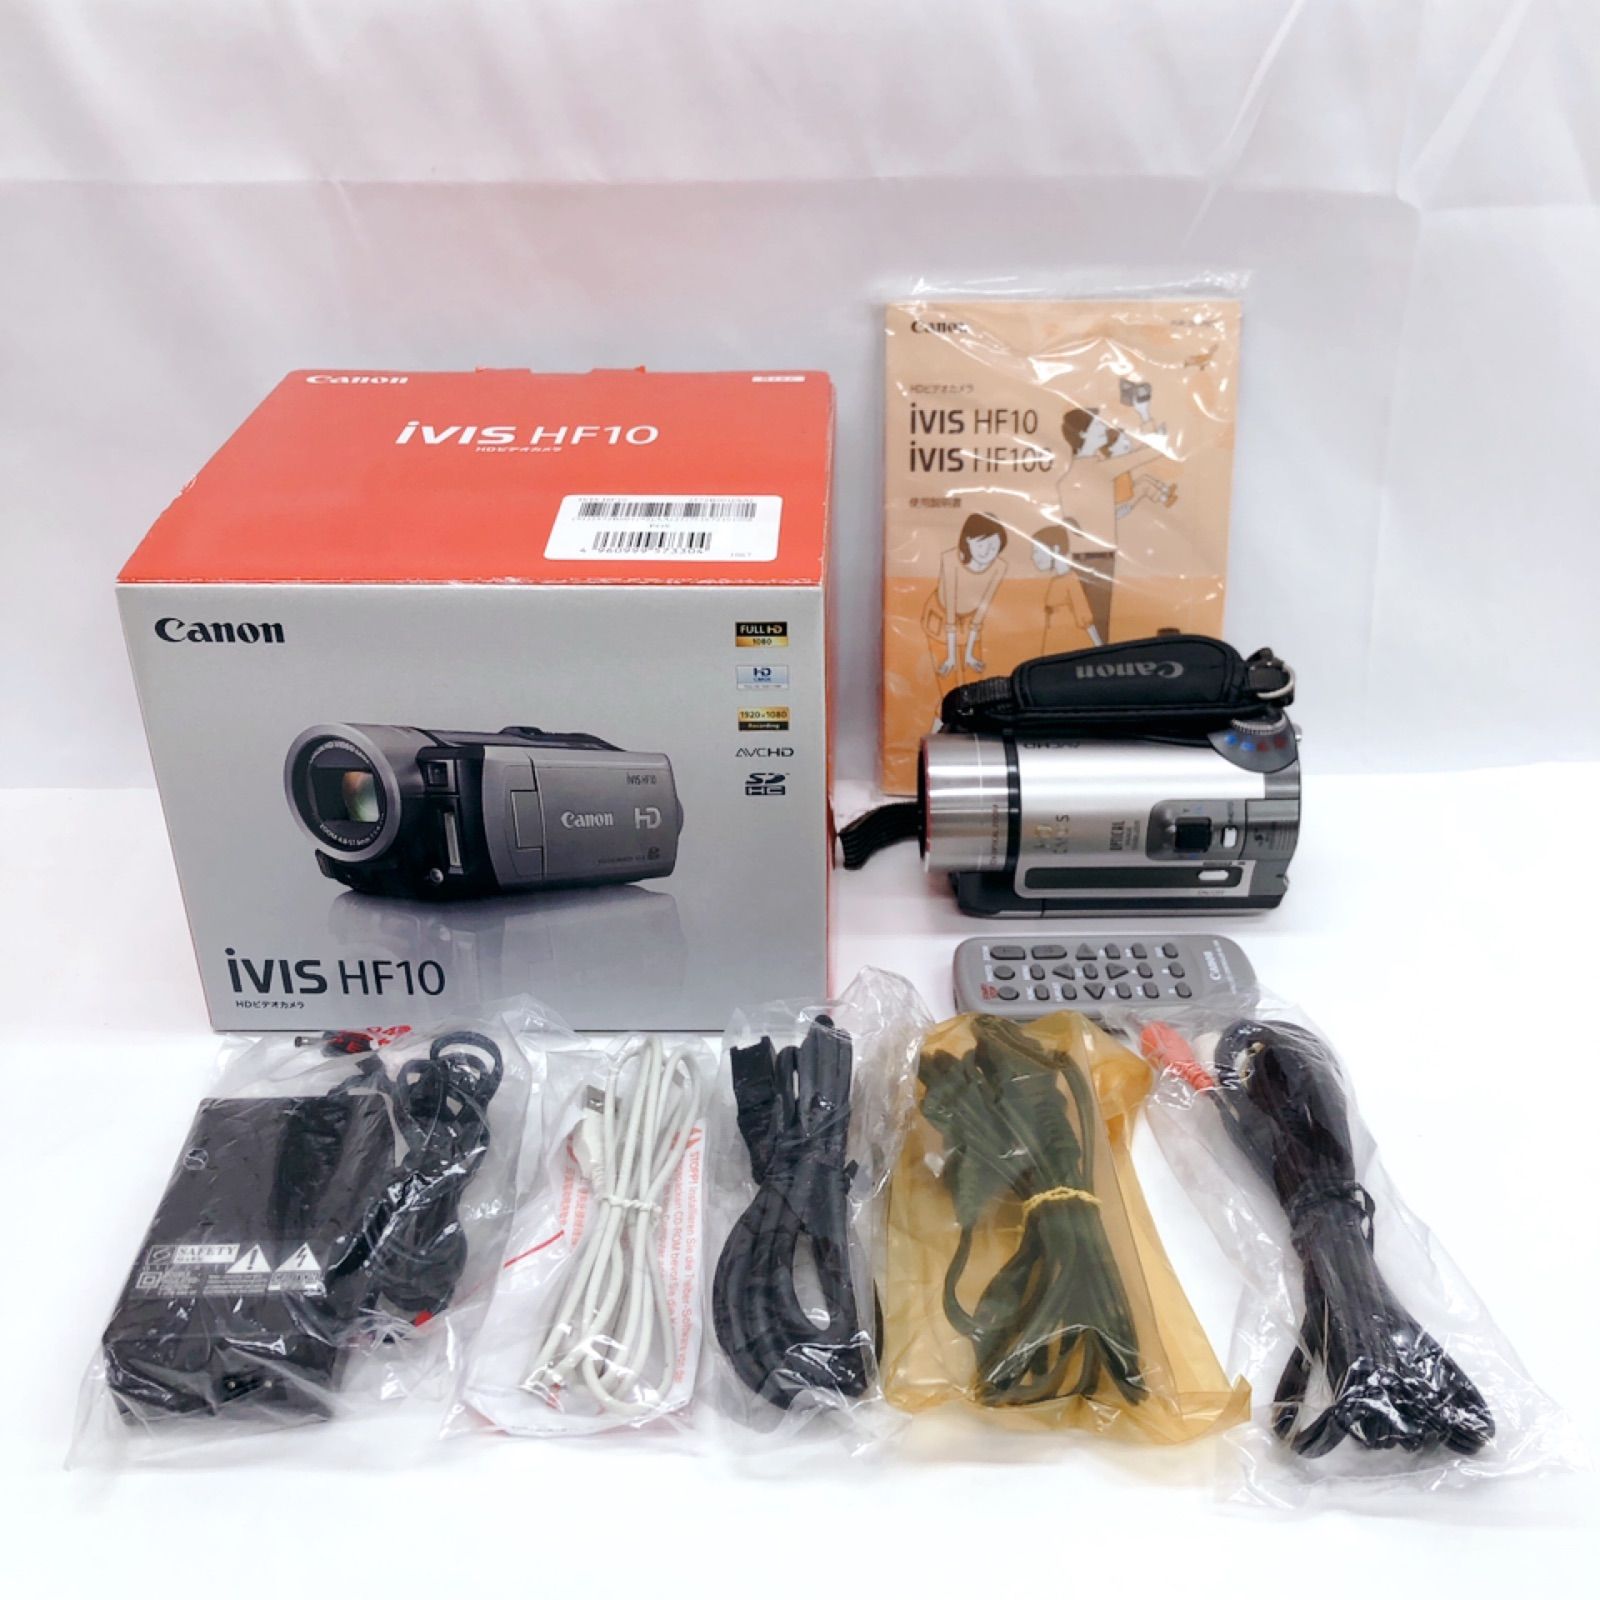 キャノン HDビデオカメラ ivis HD10本体 - ビデオカメラ